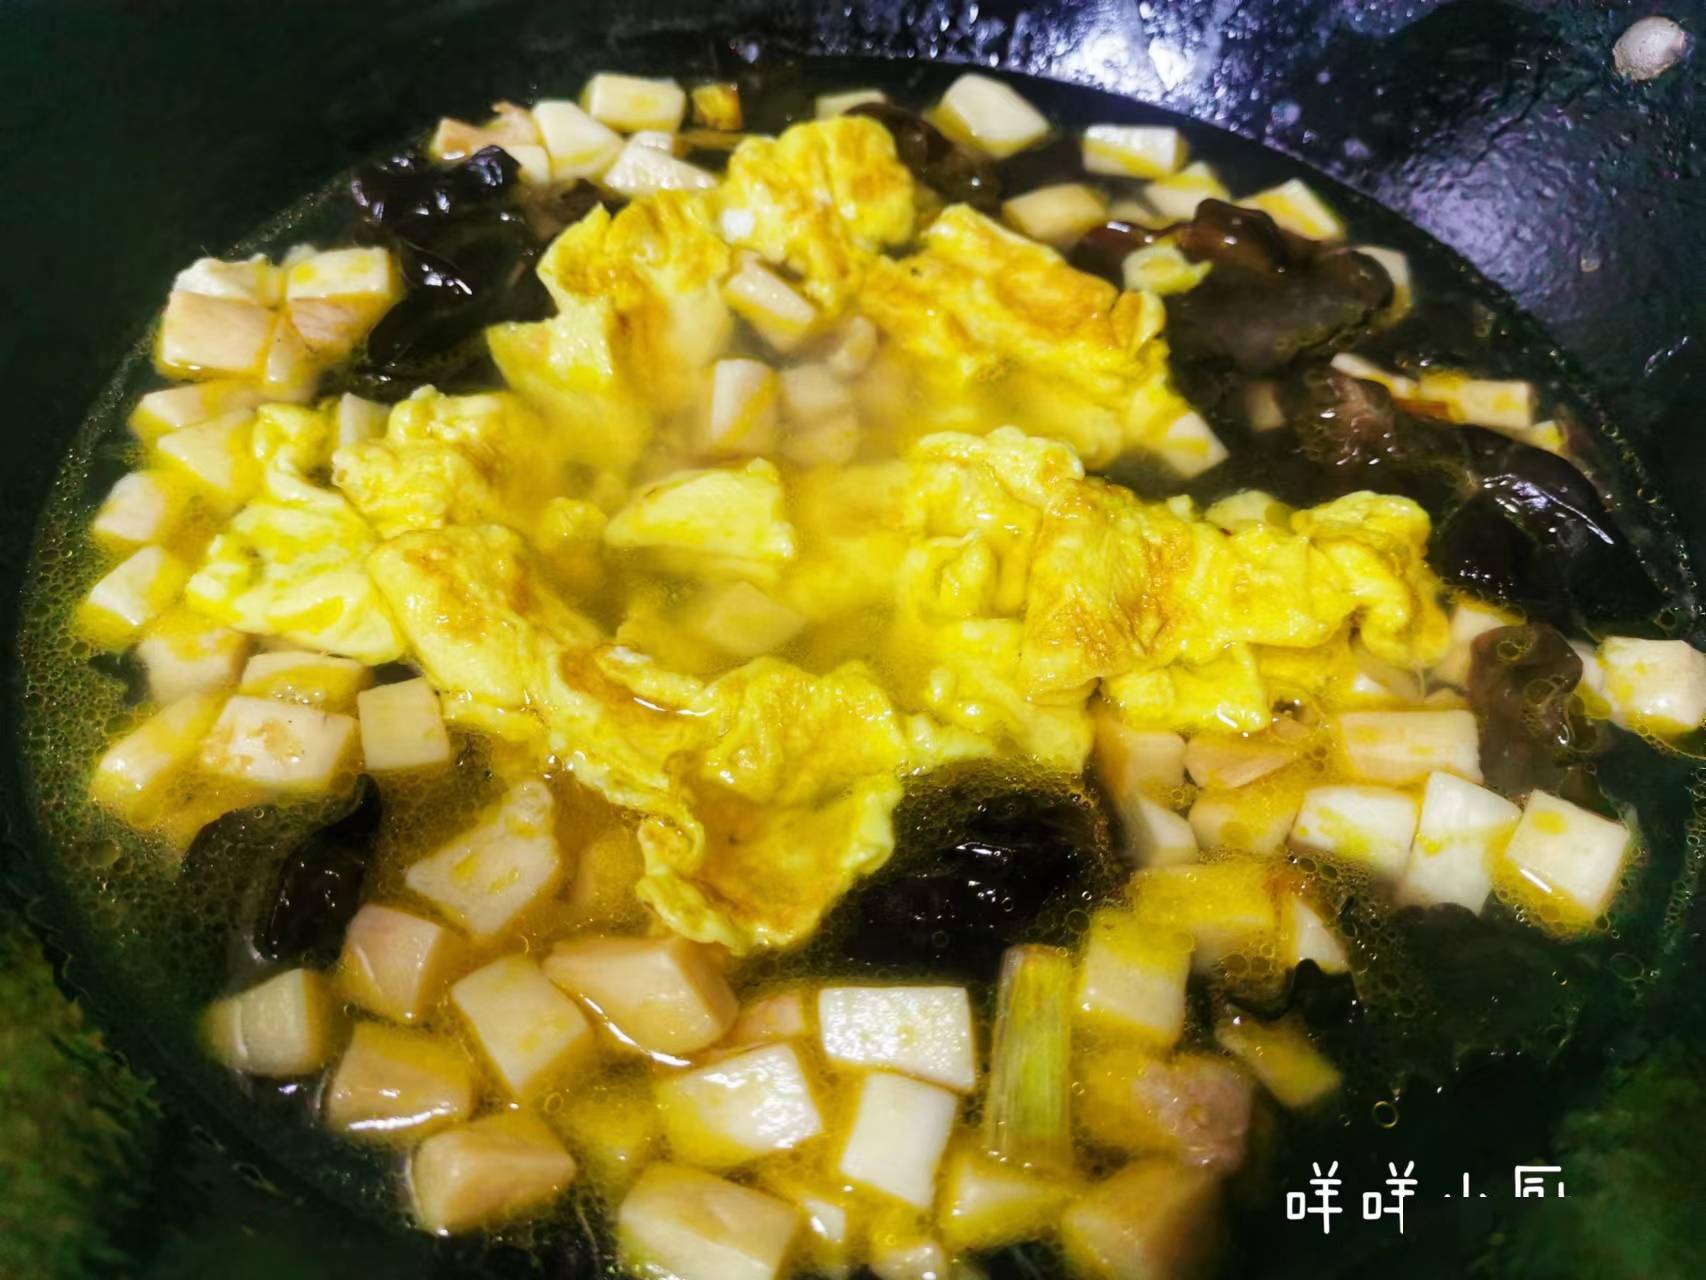 鲜美的杏鲍菇鸡蛋汤就做好了,低脂的哦,放心地大口吃吧.